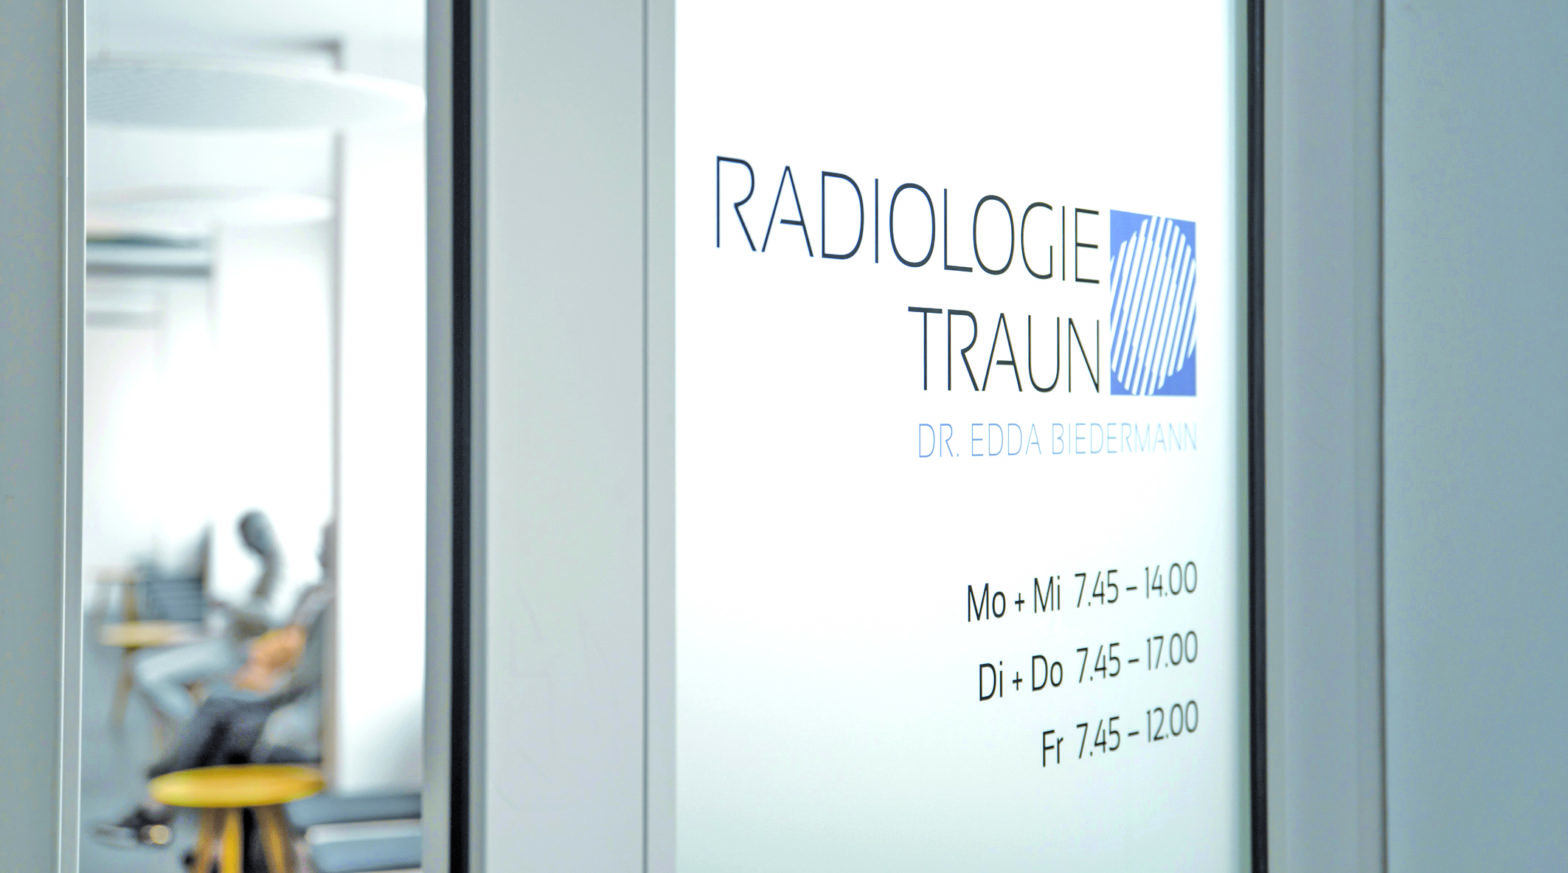 Radiologie Traun, Dr. Edda Biedermann